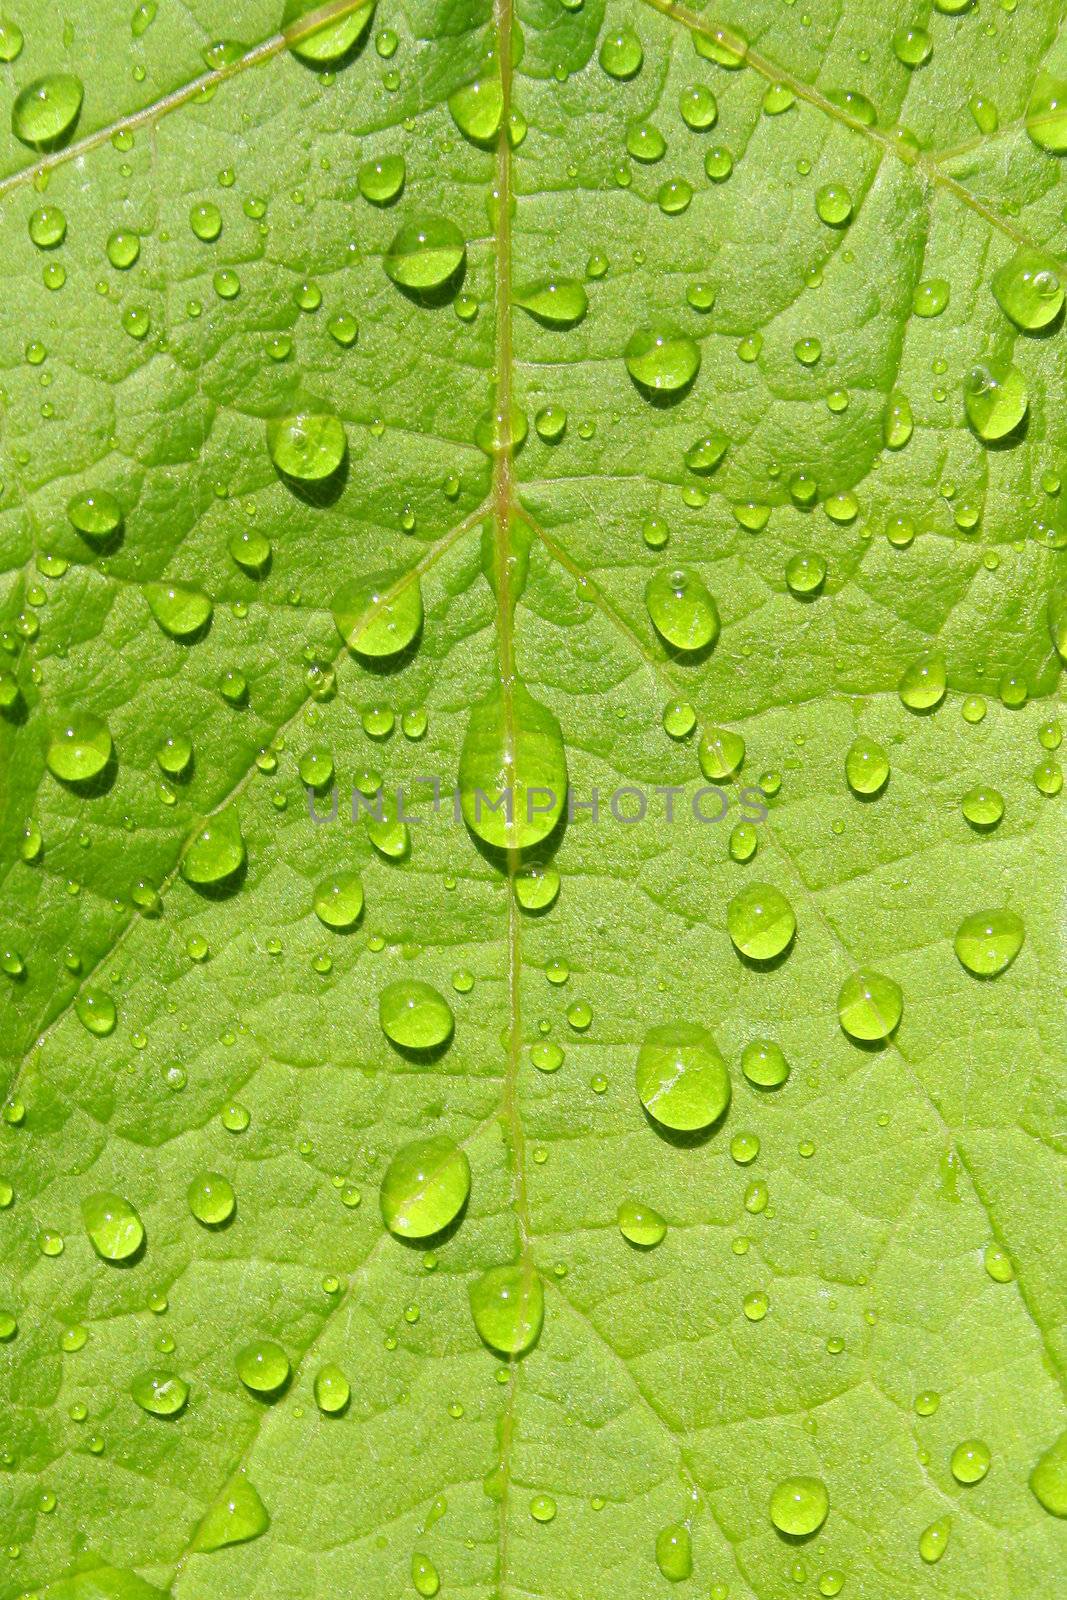 green leaf wet after rain 